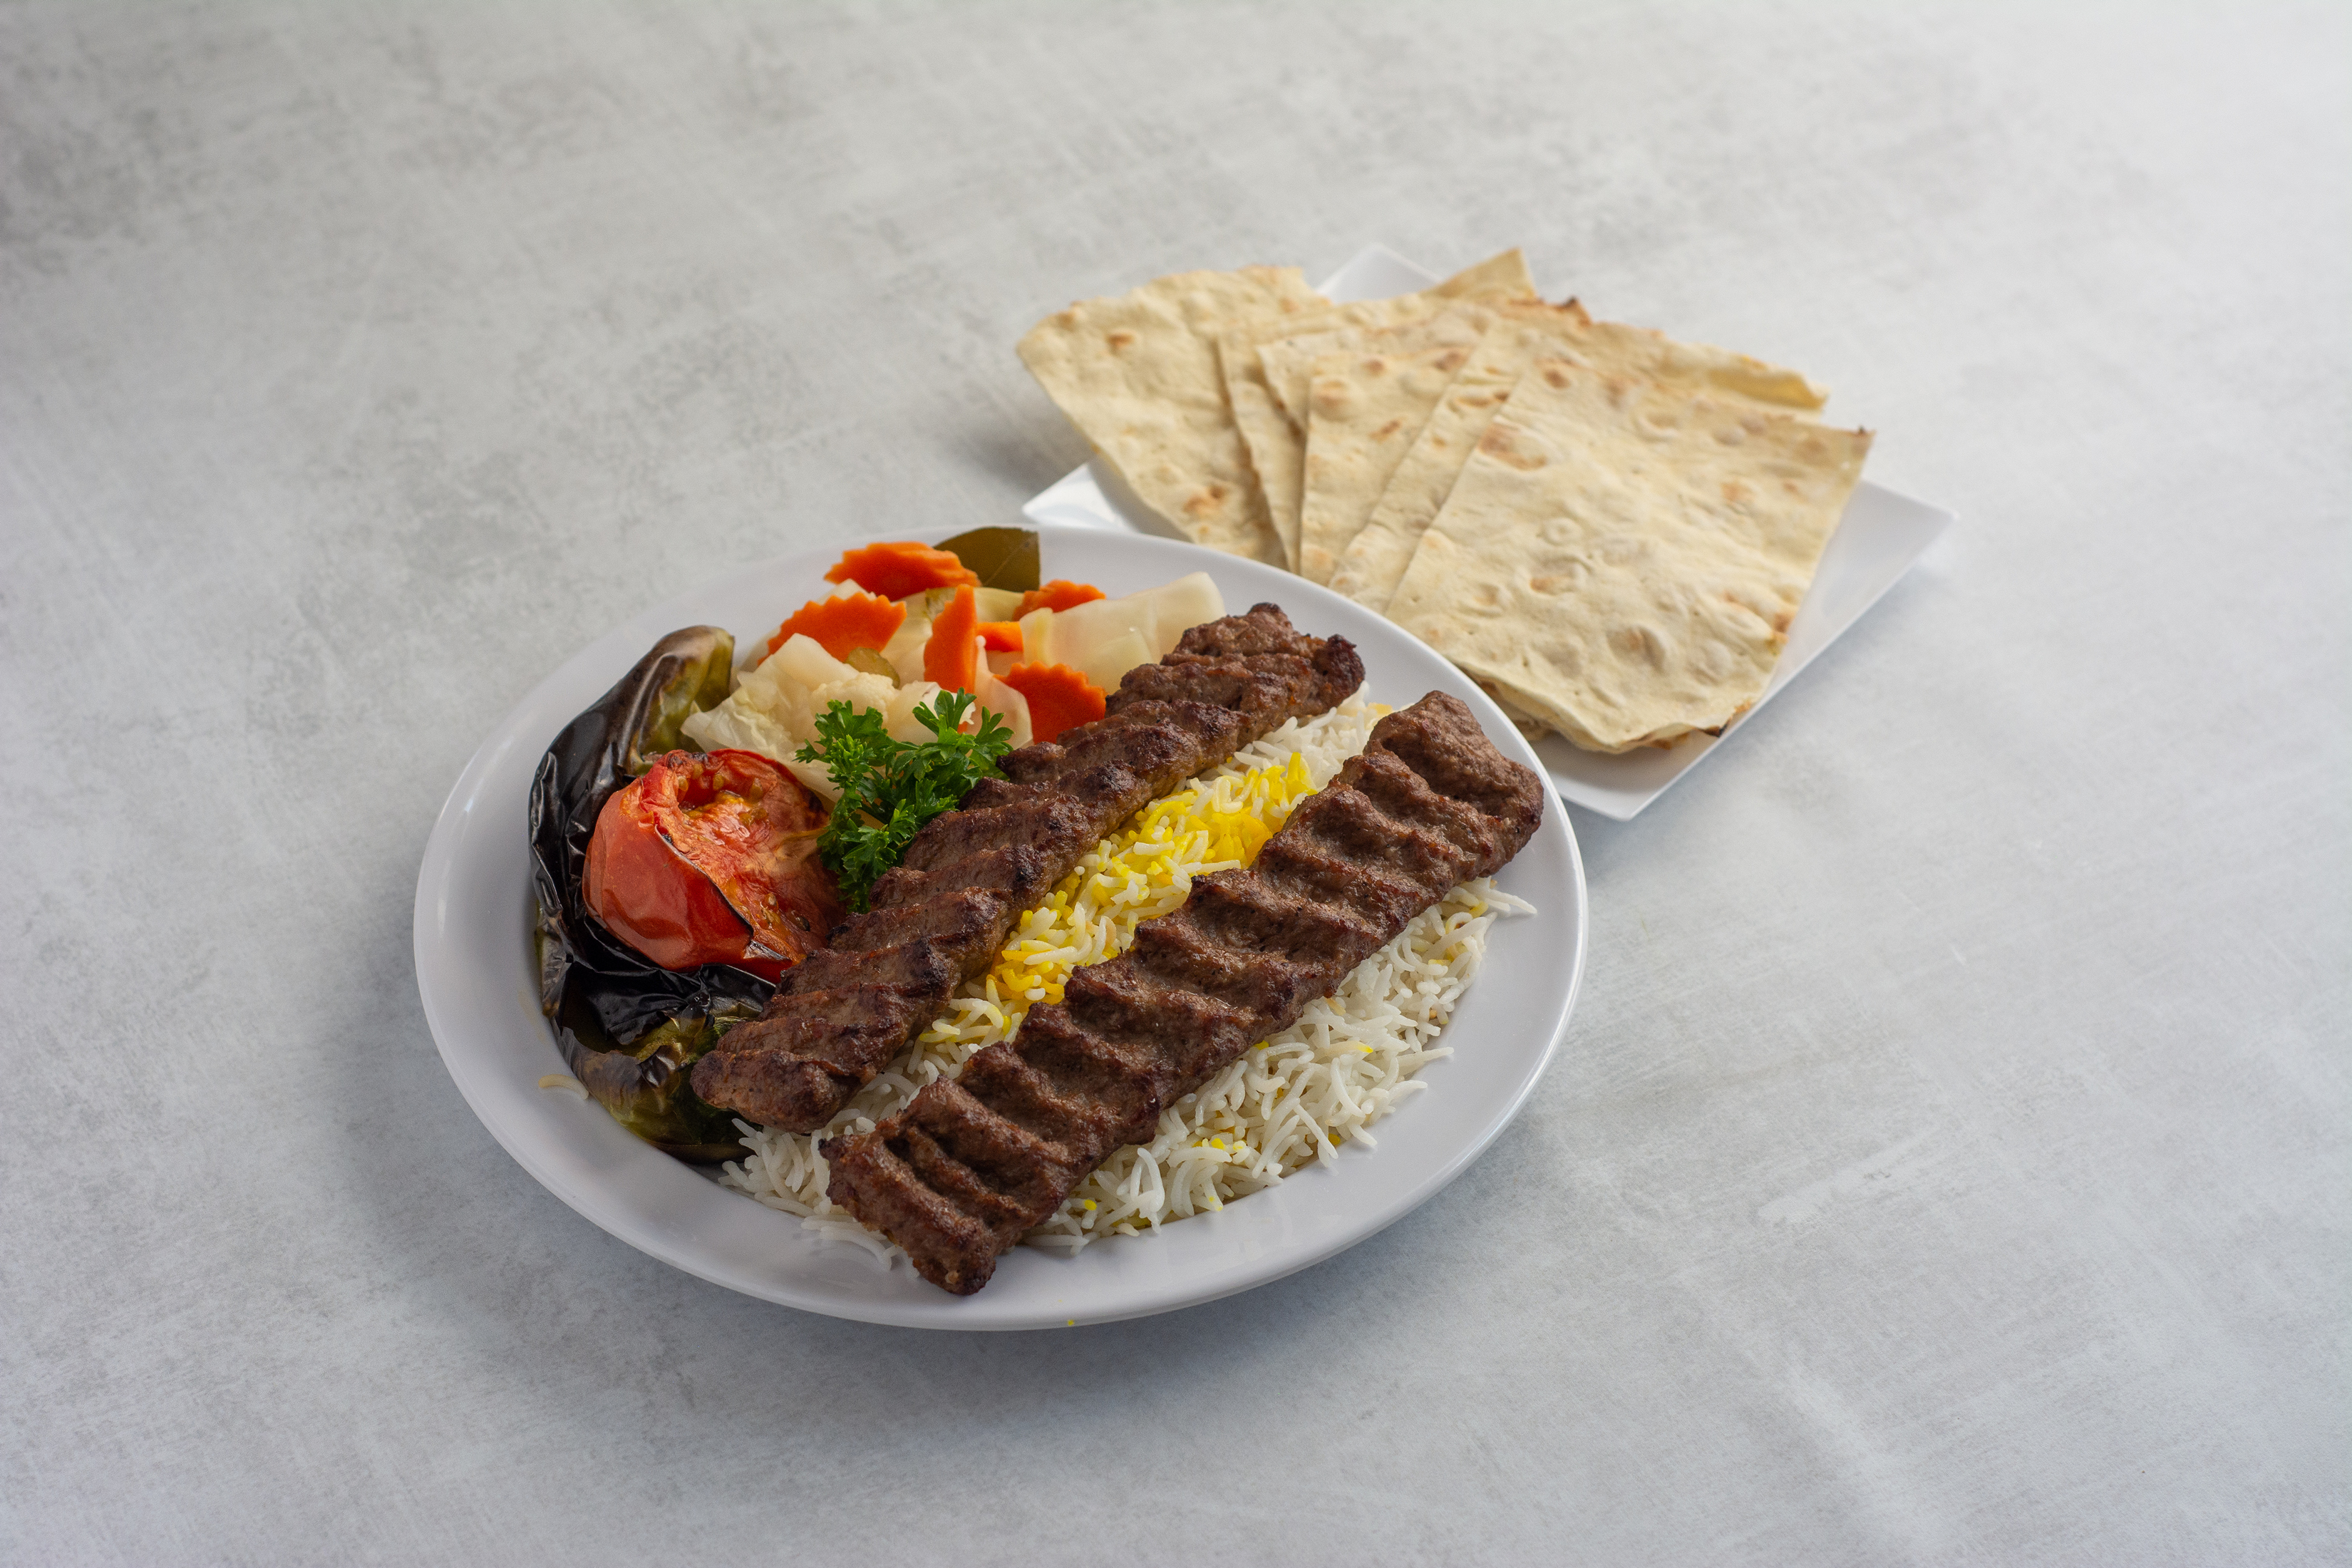 Order 2. Luleh Kebab Dinner Plate food online from Caravan restaurant store, Glendale on bringmethat.com